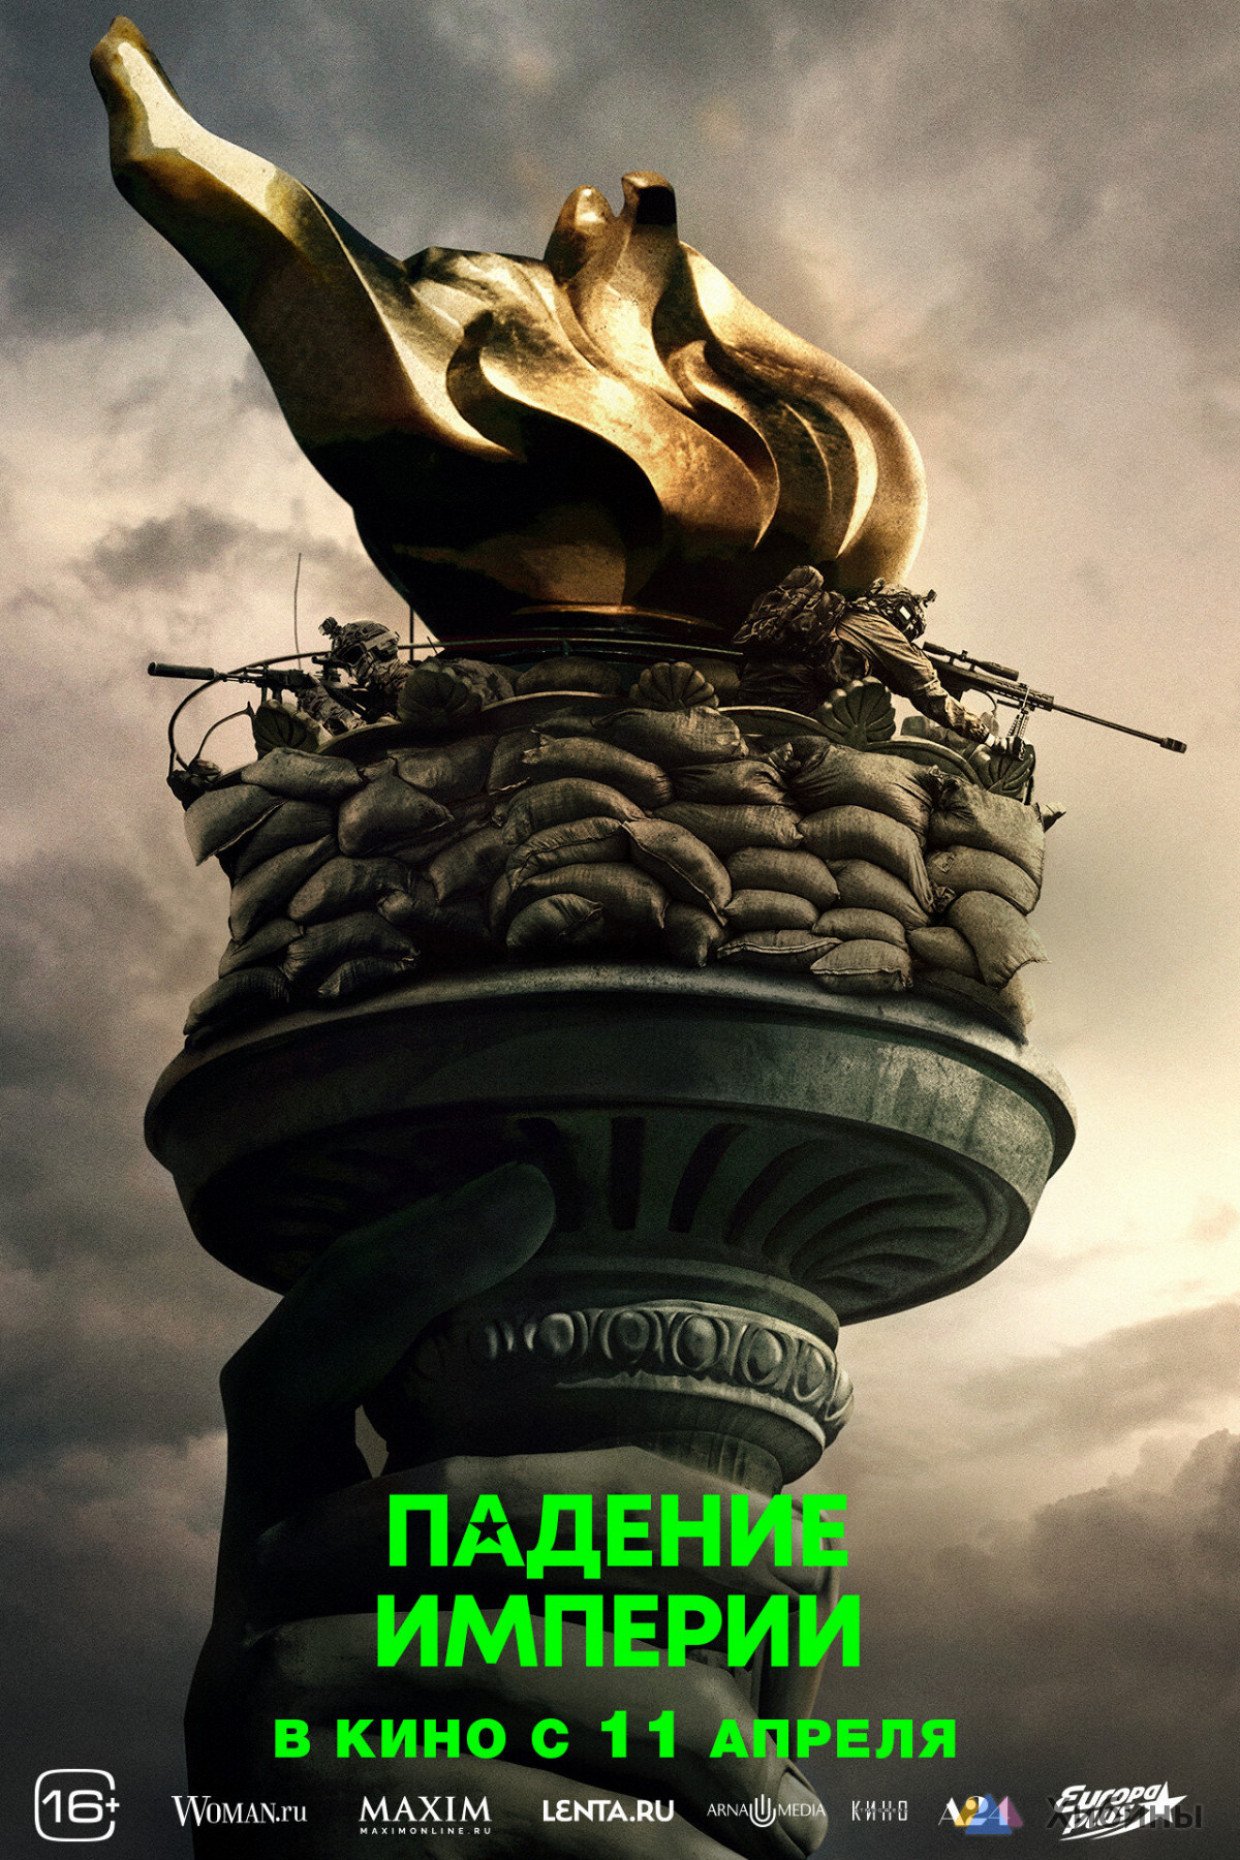 Что идет в кинотеатрах Мурманской области в ближайшие дни